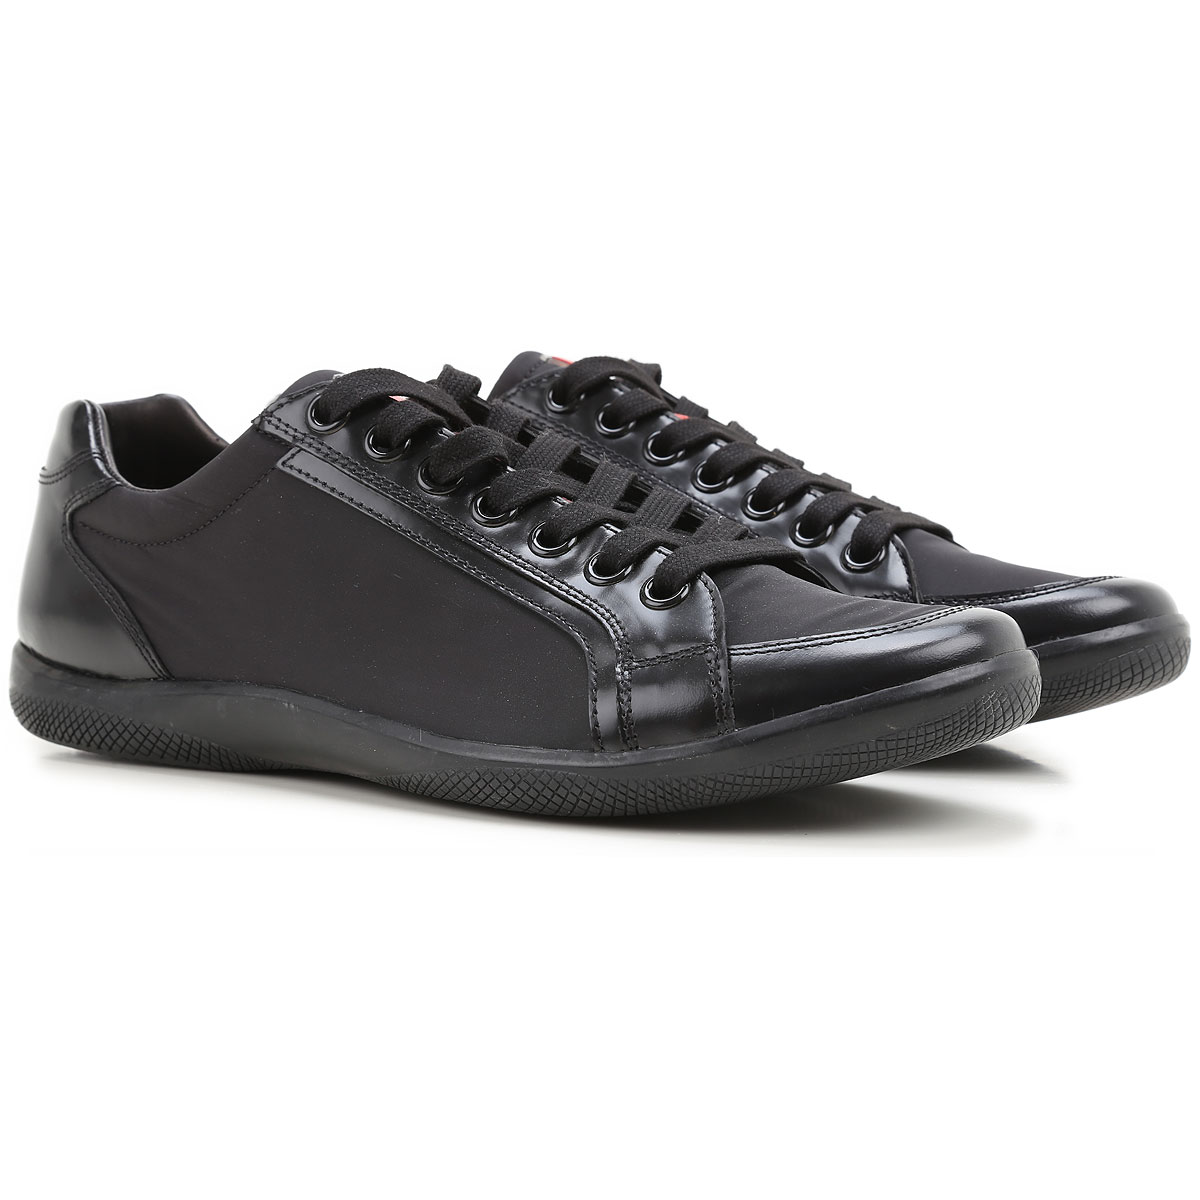 Mens Shoes Prada, Style code: 4e2439-30uu-f0002